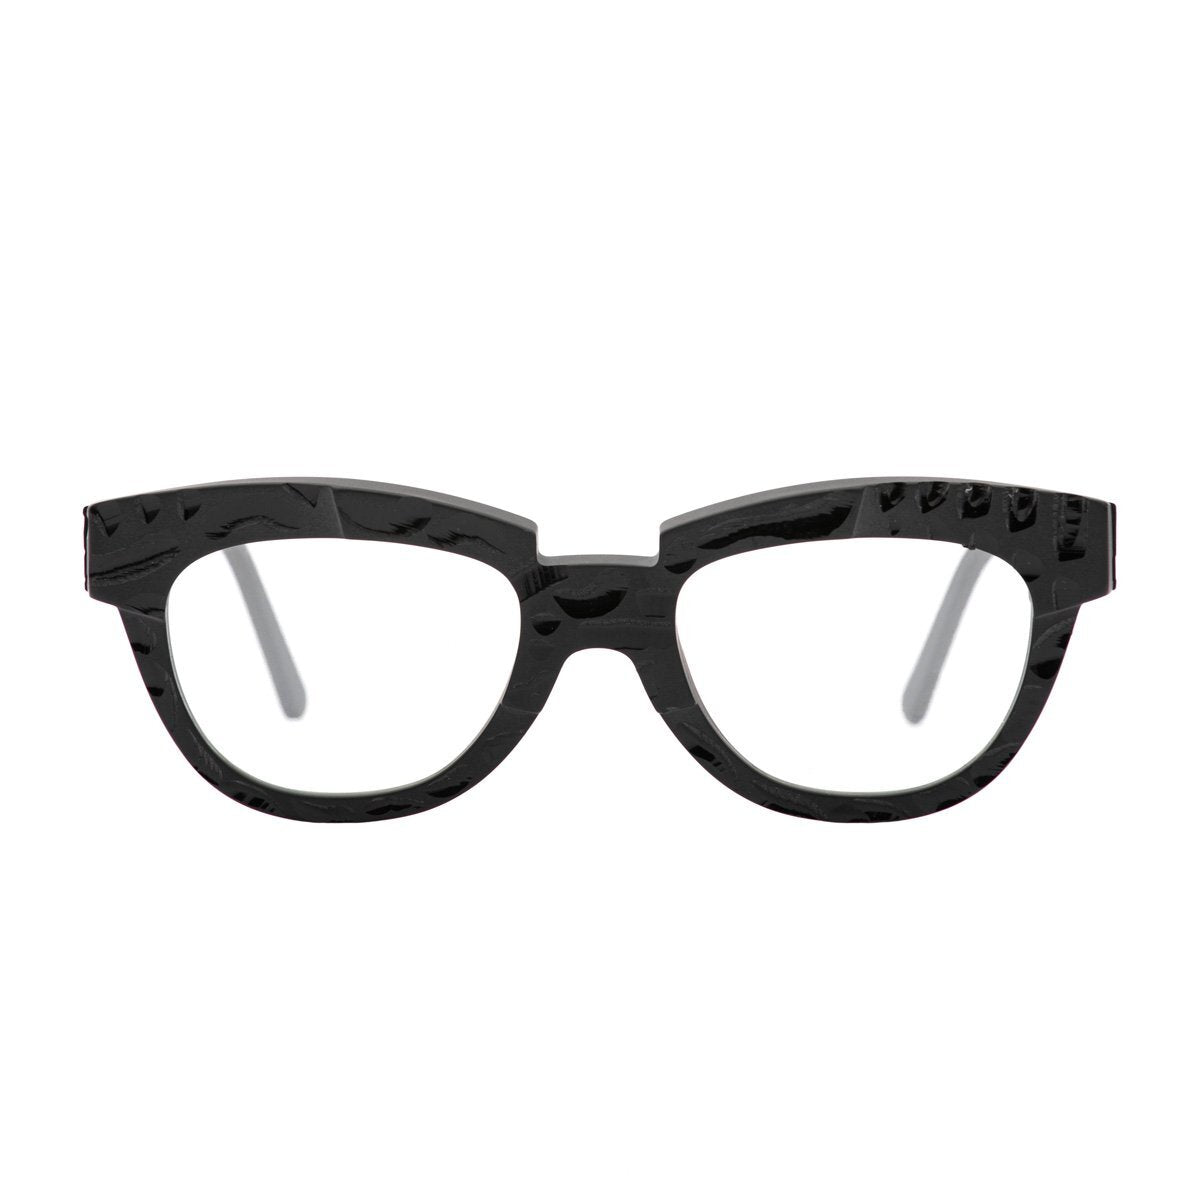 Kuboraum Maske K19 - Eyeglasses from Germany